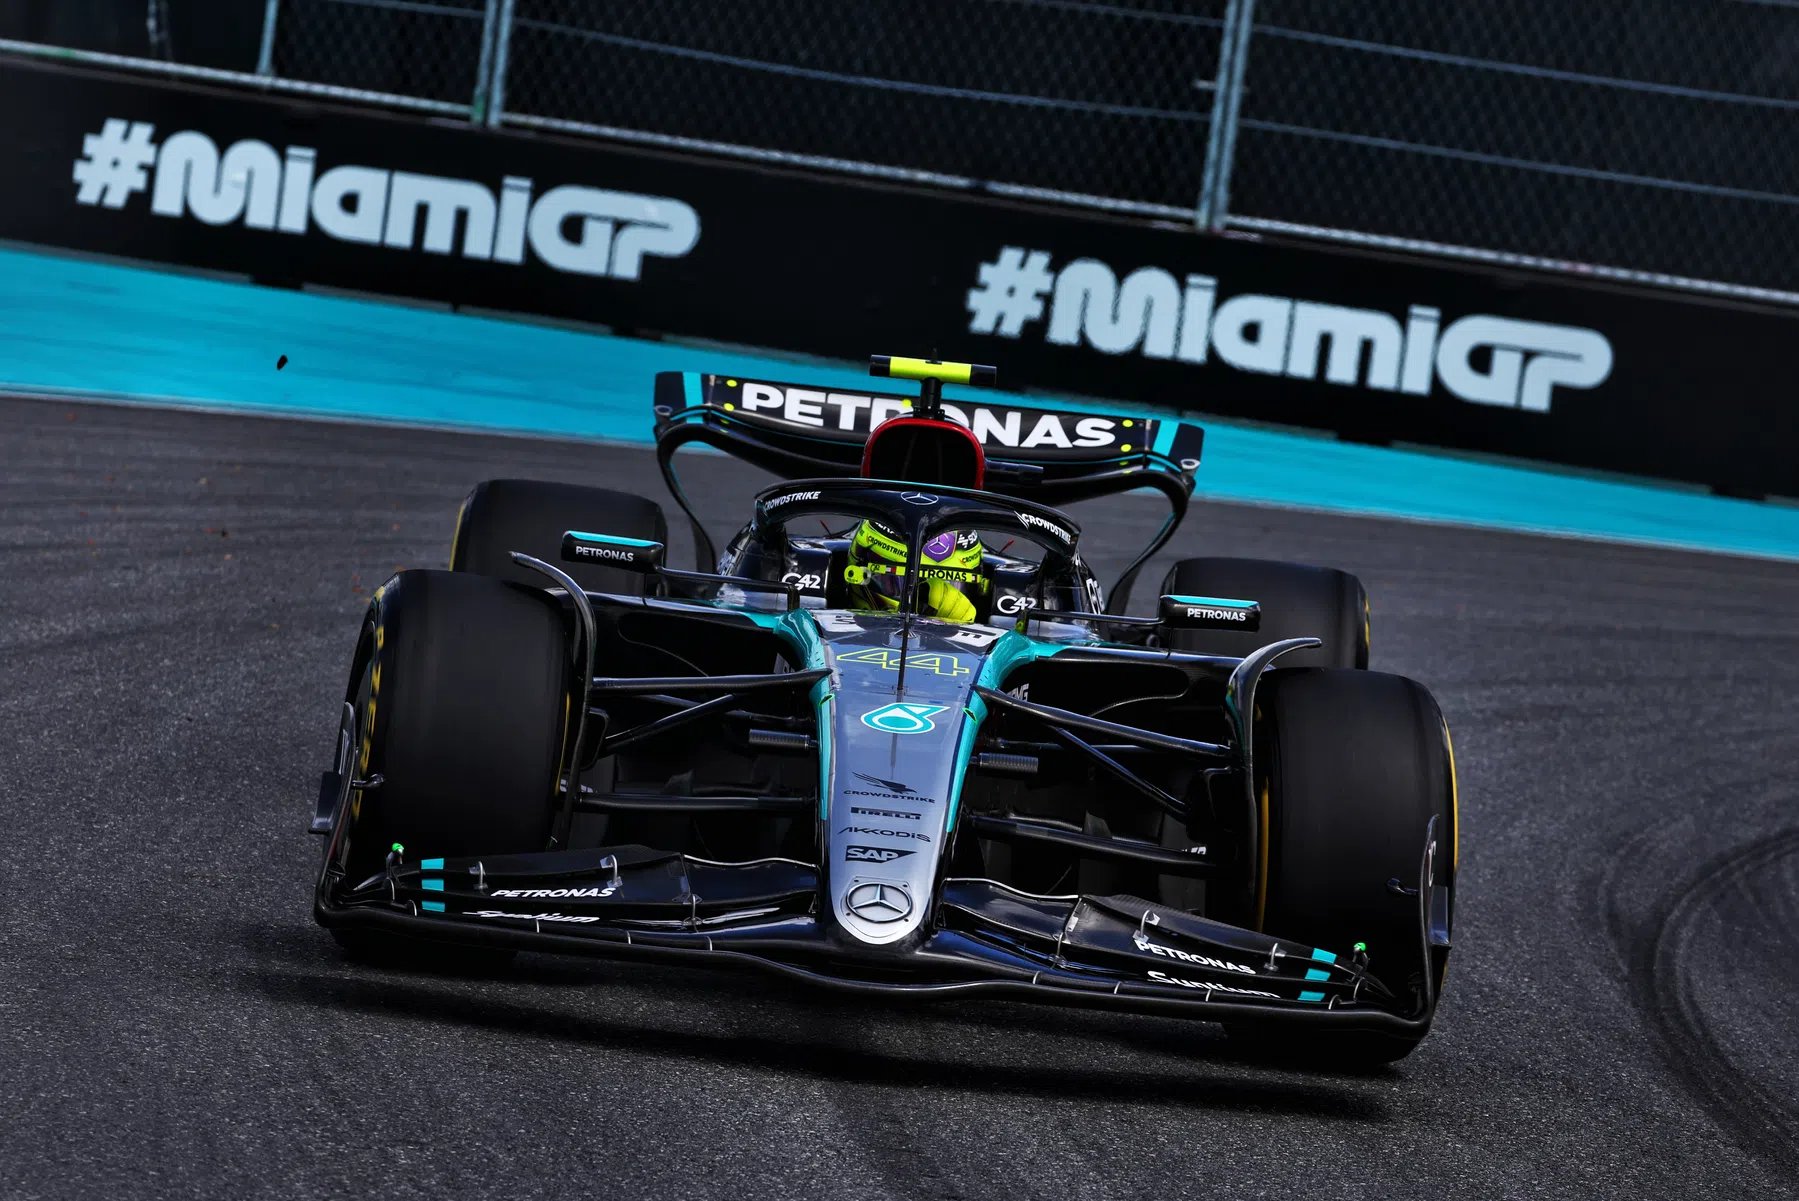 Hamilton has no excuses in Miami Grand Prix